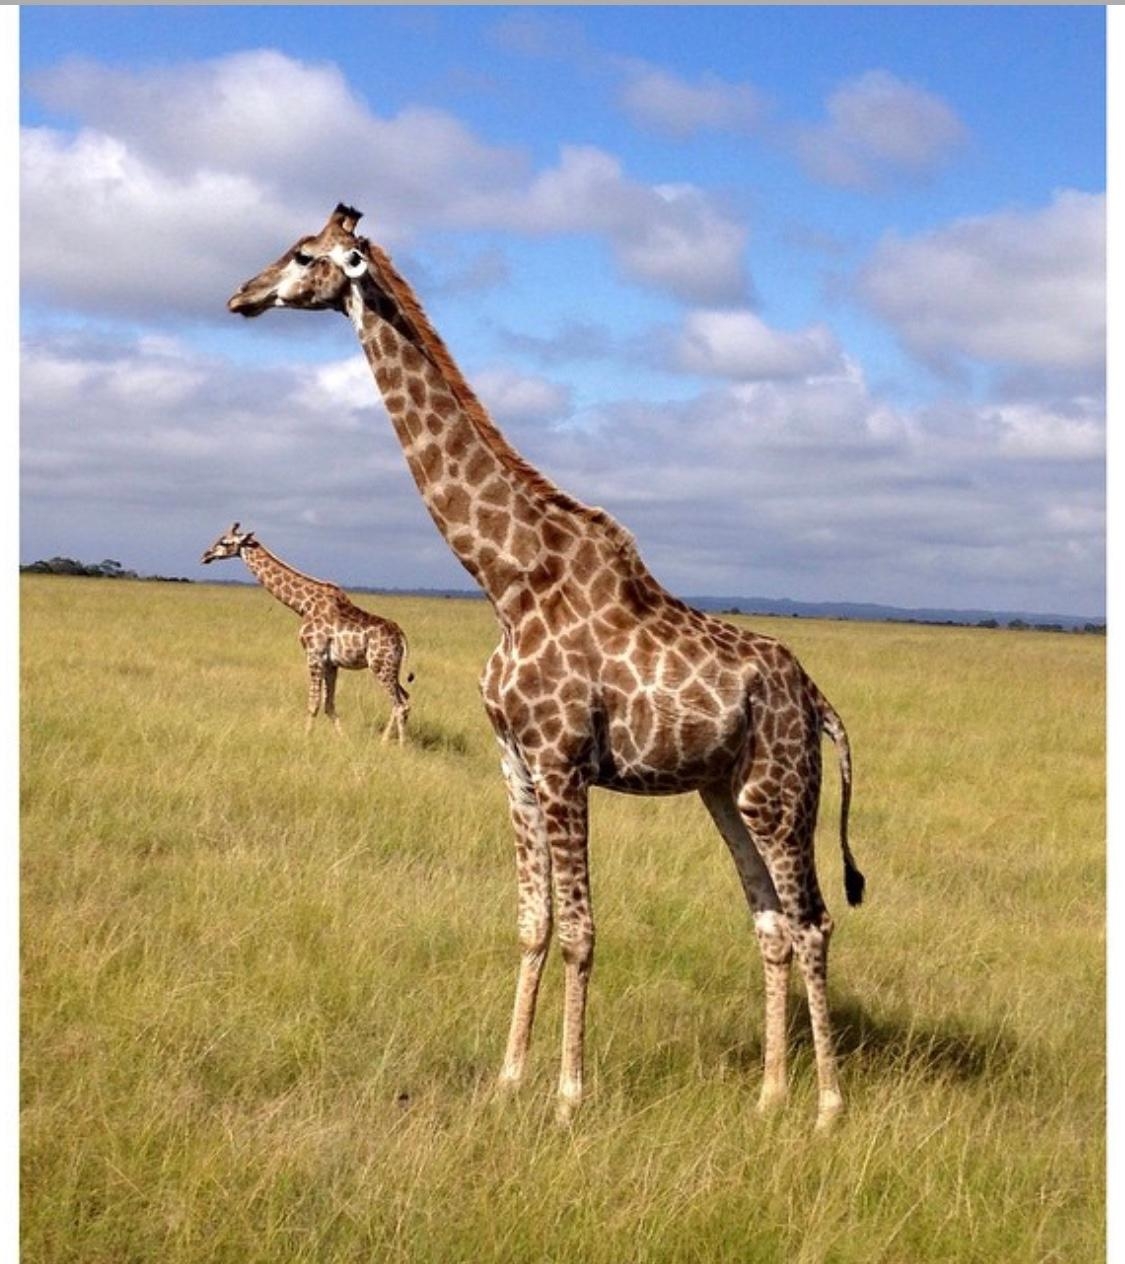 Mein mit Abstand #schönsterurlaub war auf Safari in Südafrika. Unfassbar schön! #travelchallenge 💚